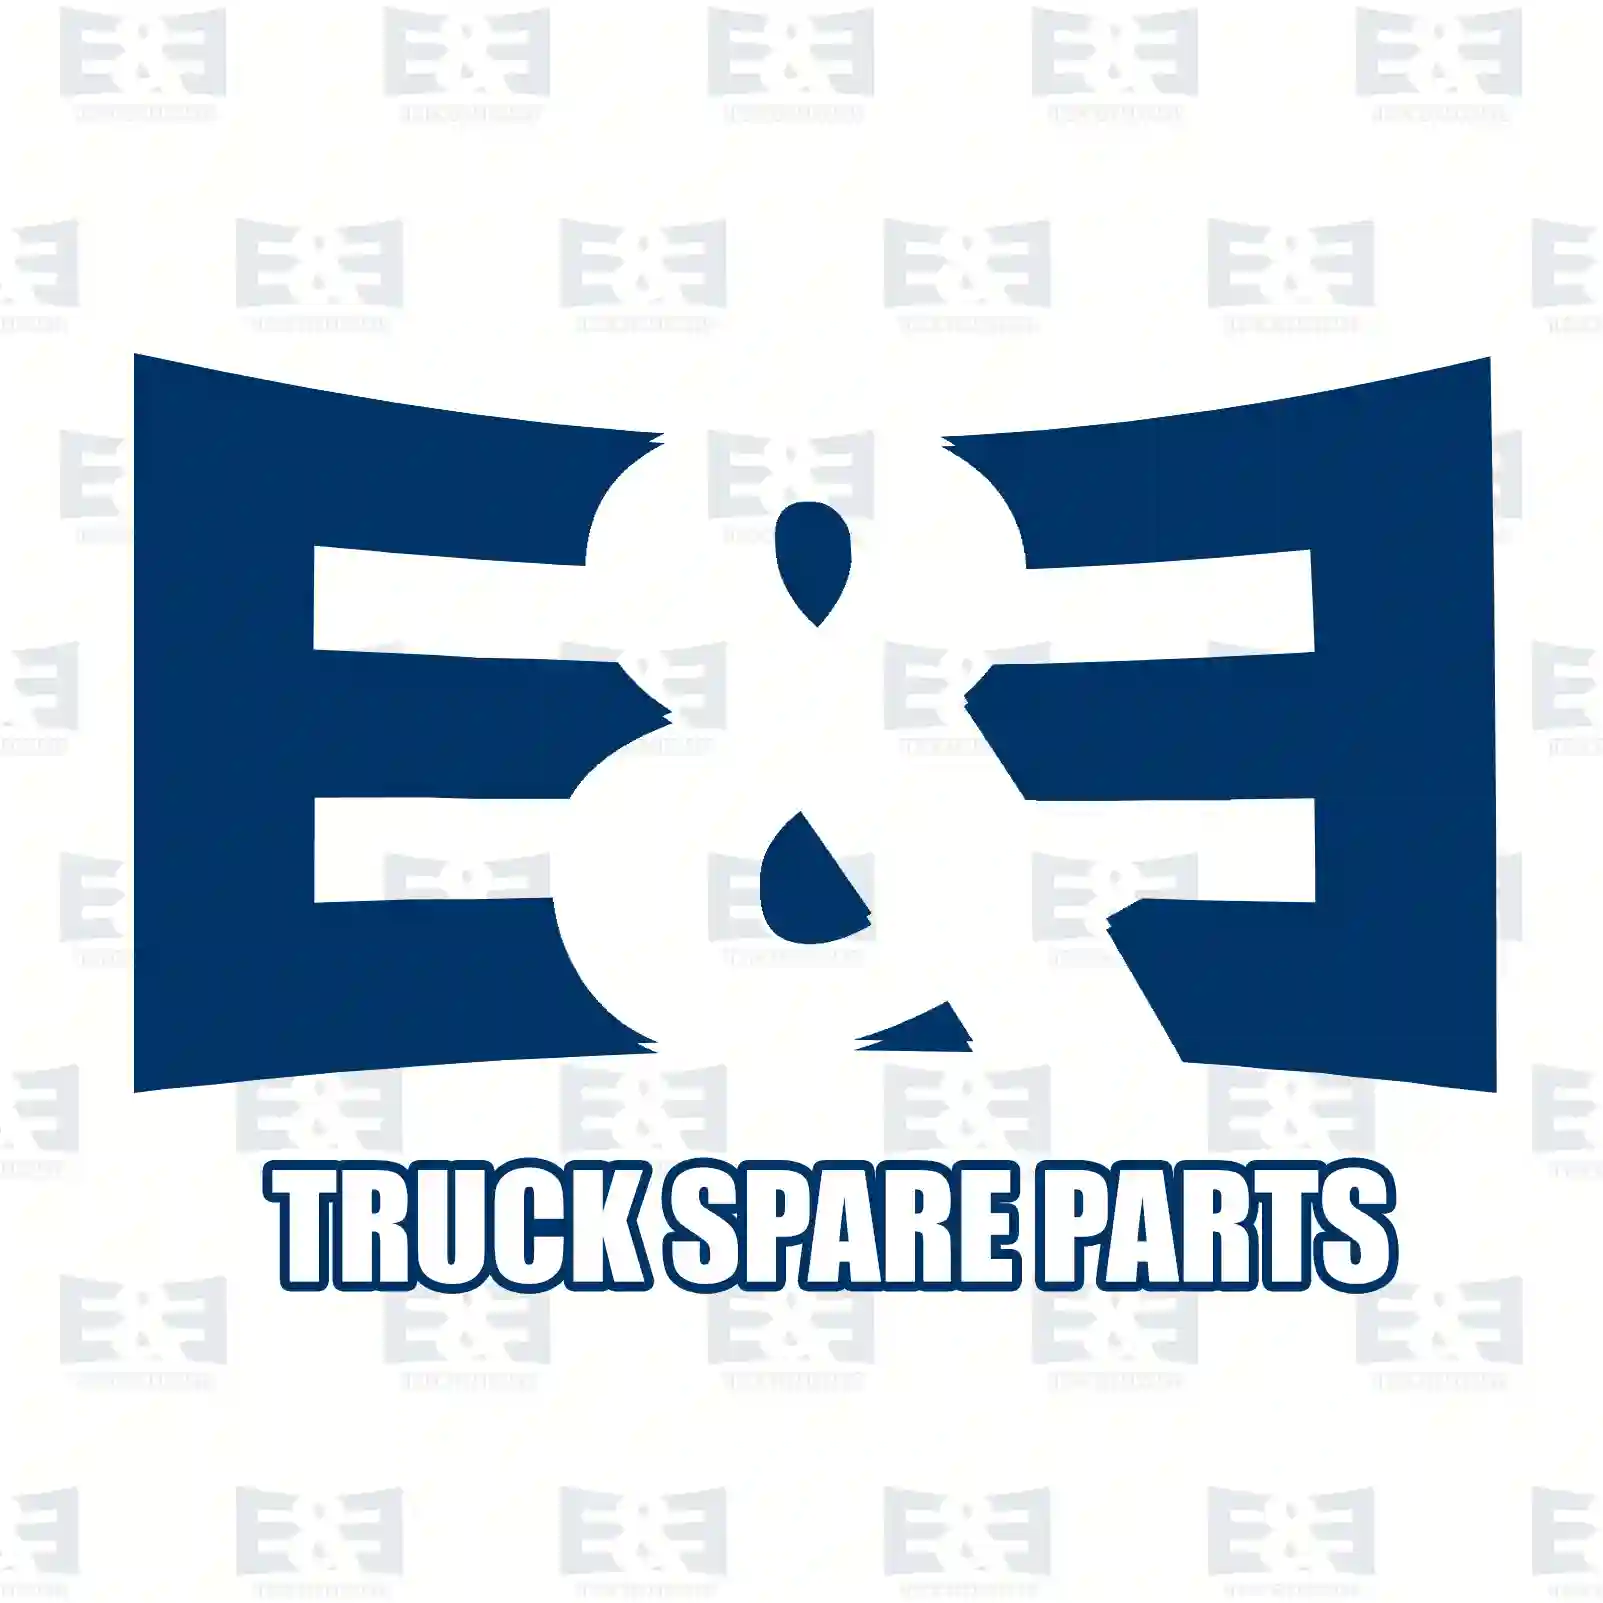 V-belt kit, 2E2203889, 06580400239, 06580420239, 06580430239, 06580432239, 06580482239, 06580722391, 06580722392, 06580732391, 06580732392, 6649978192, 70308834, ZG02378-0008 ||  2E2203889 E&E Truck Spare Parts | Truck Spare Parts, Auotomotive Spare Parts V-belt kit, 2E2203889, 06580400239, 06580420239, 06580430239, 06580432239, 06580482239, 06580722391, 06580722392, 06580732391, 06580732392, 6649978192, 70308834, ZG02378-0008 ||  2E2203889 E&E Truck Spare Parts | Truck Spare Parts, Auotomotive Spare Parts